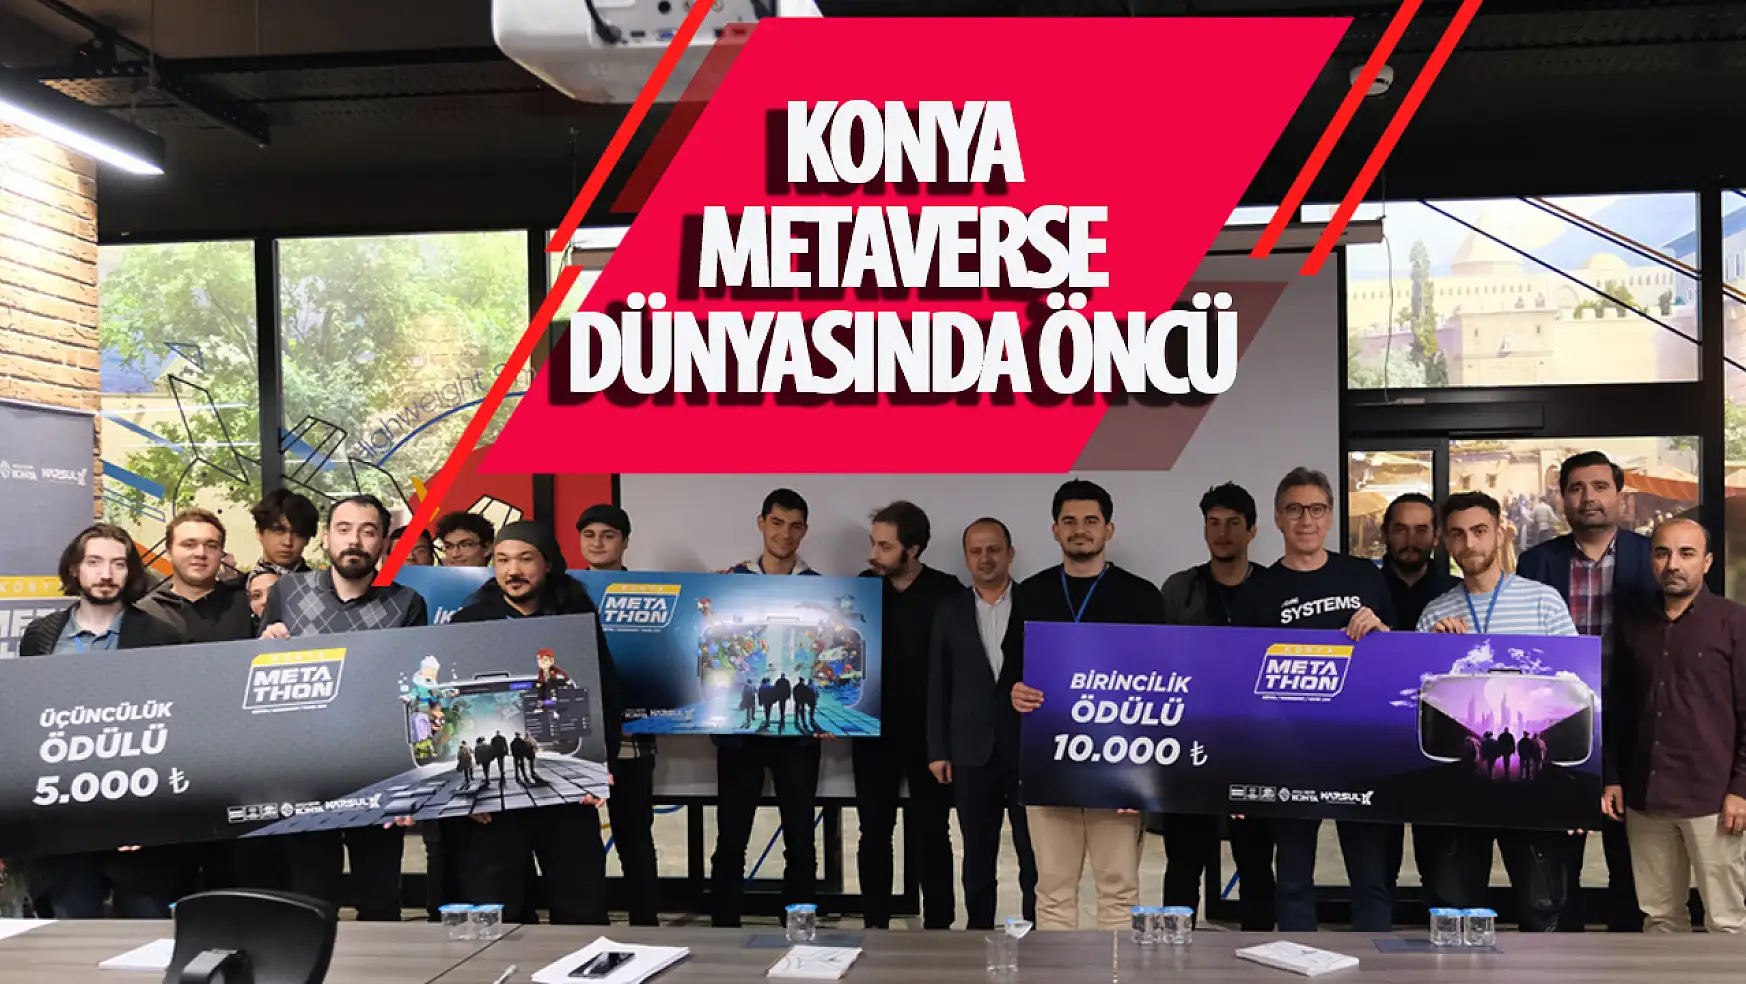 Konya Büyükşehir Belediyesi, Metaverse Oyun Geliştirme Maratonu ile Yetenekleri Keşfetti